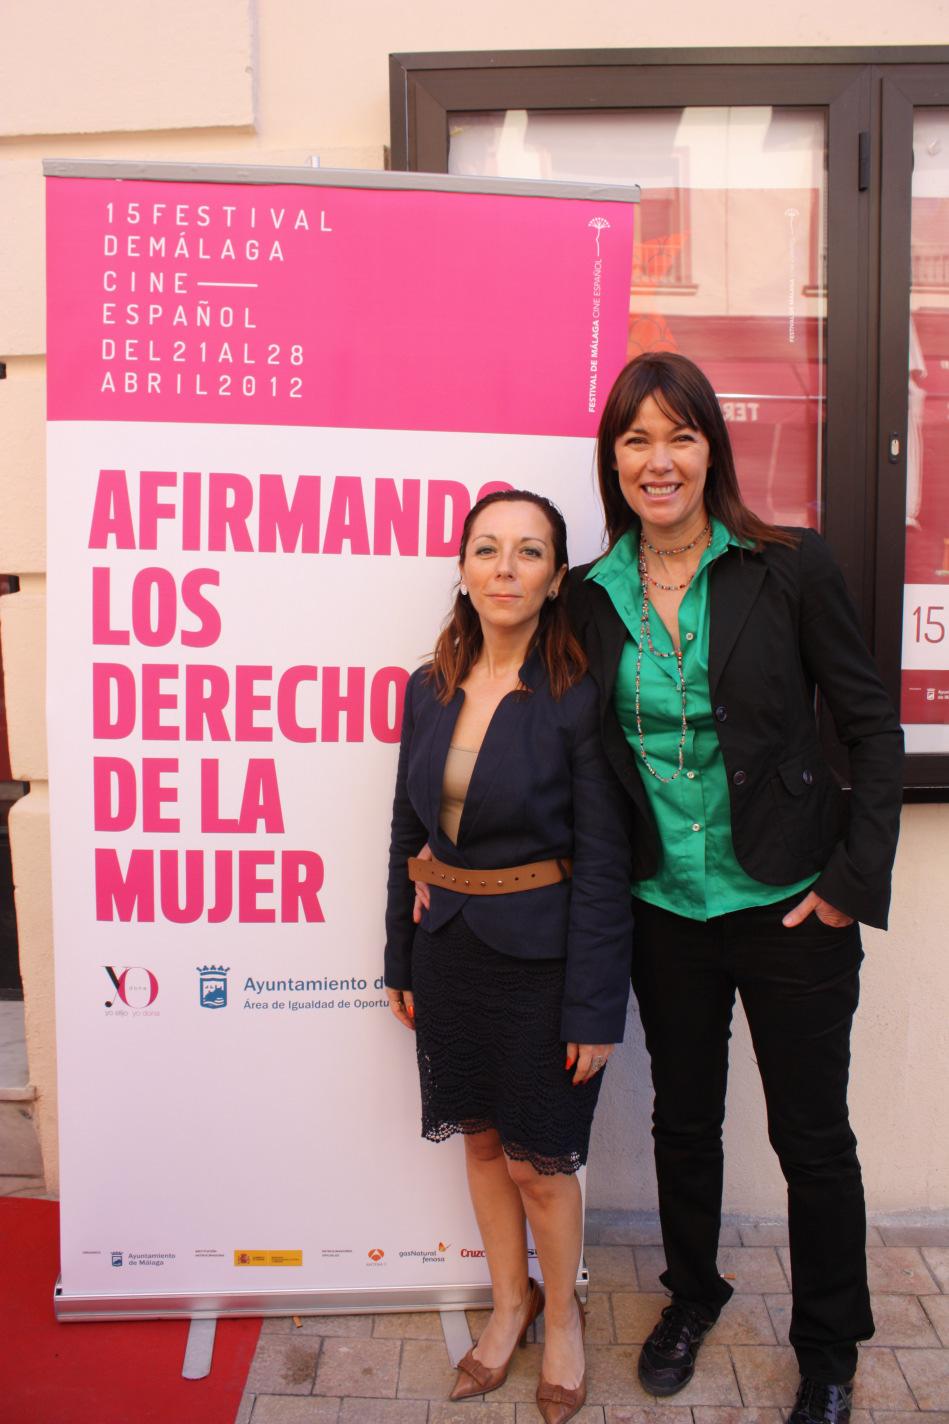 AFIRMANDO LOS DERECHOS DE LA MUJER 2013 El Festival de Cine de Málaga tiene como objetivo la difusión y promoción de la cinematografía audiovisual de España y Latinoamérica, acogiendo el encuentro de